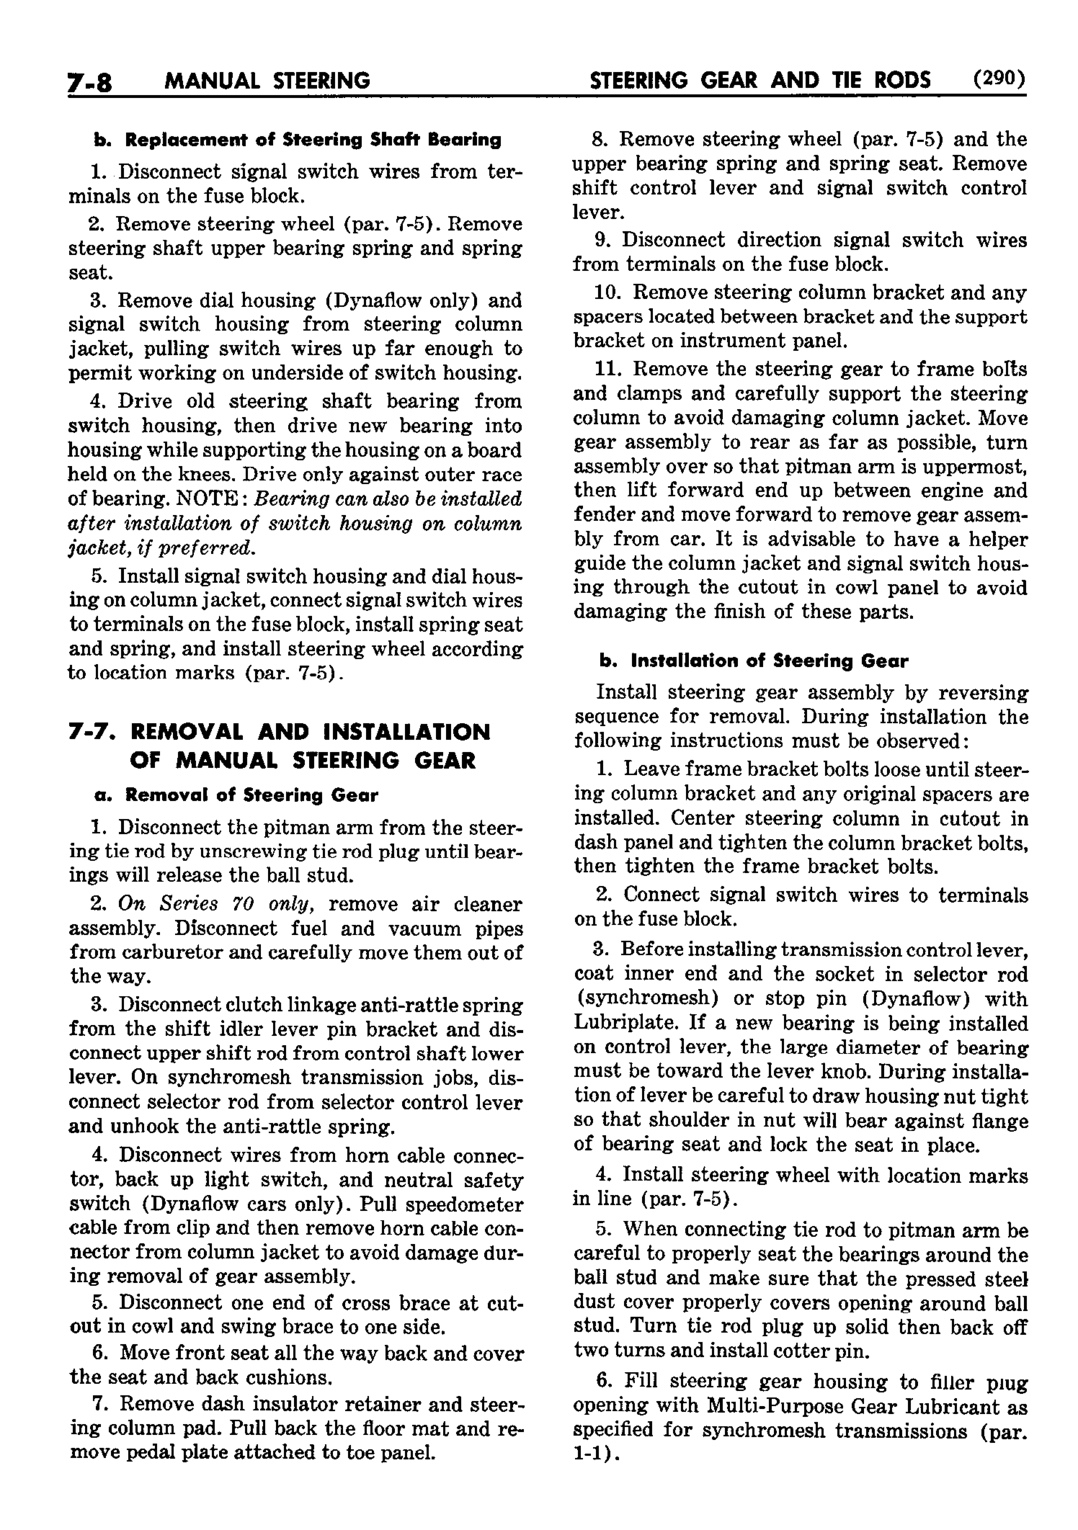 n_08 1952 Buick Shop Manual - Steering-008-008.jpg